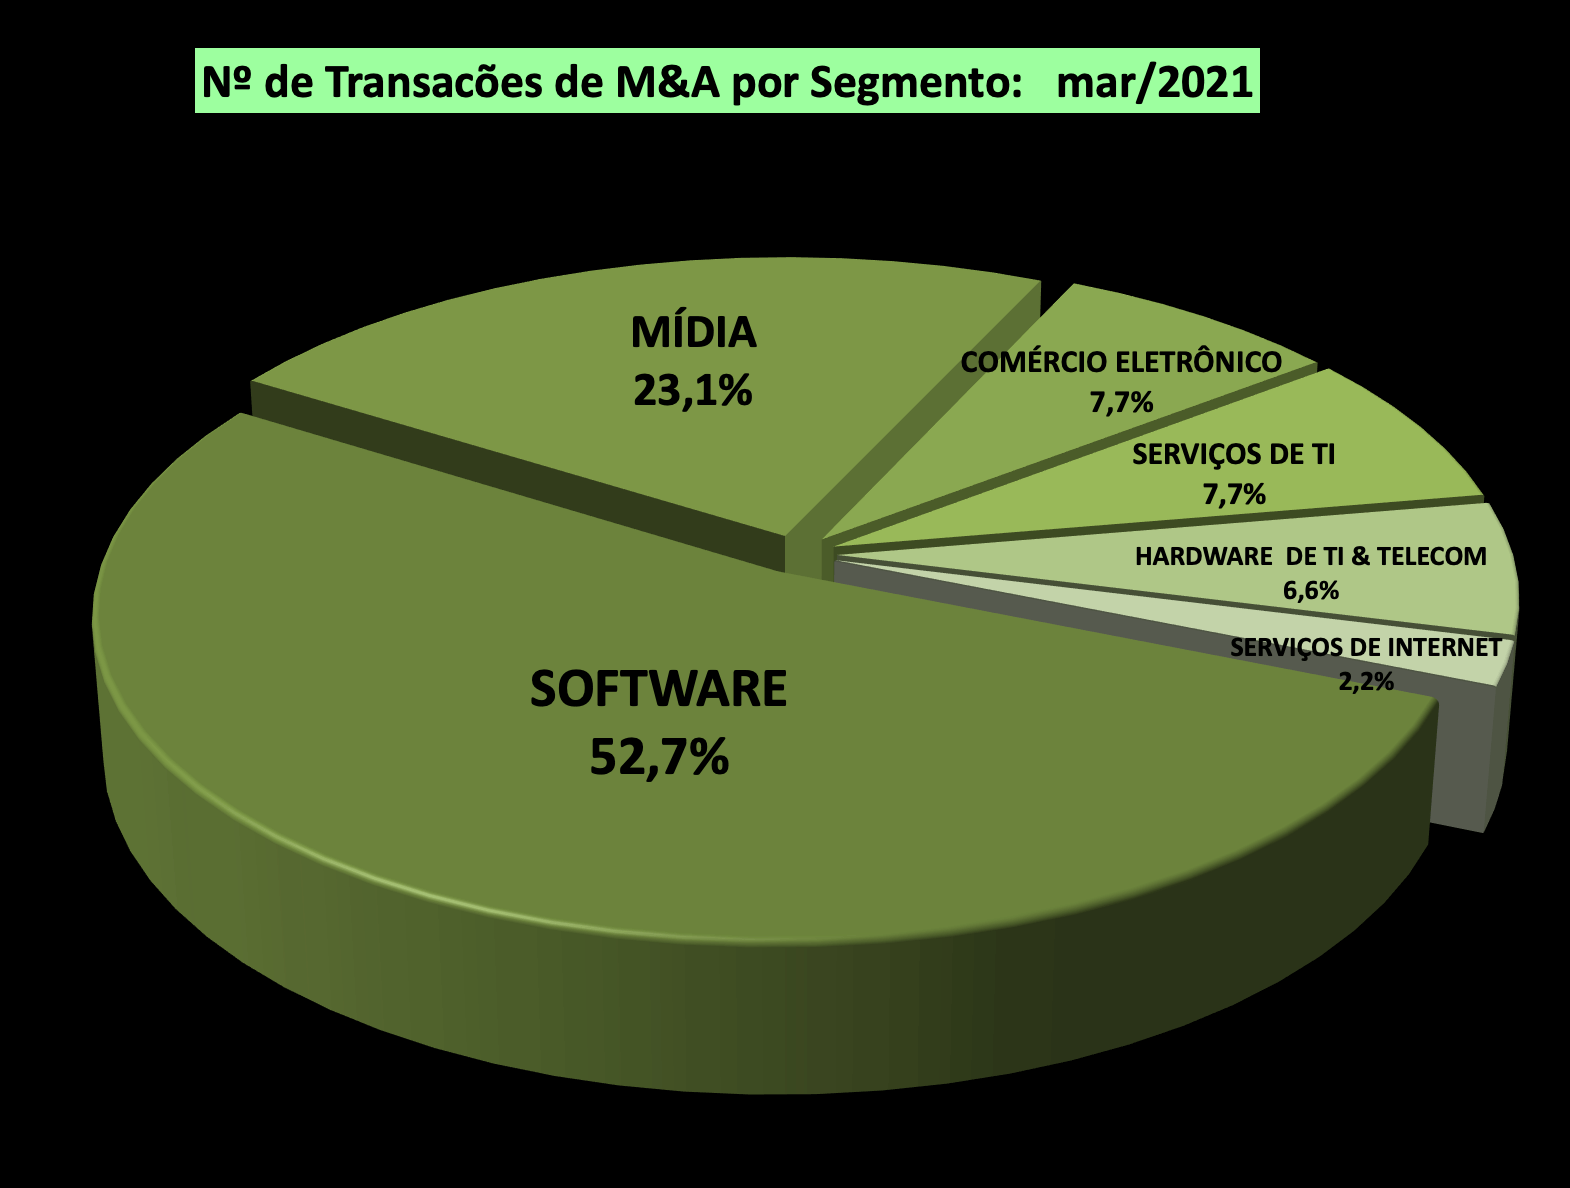 Nº de Transações de M&A por Segmento mar/21